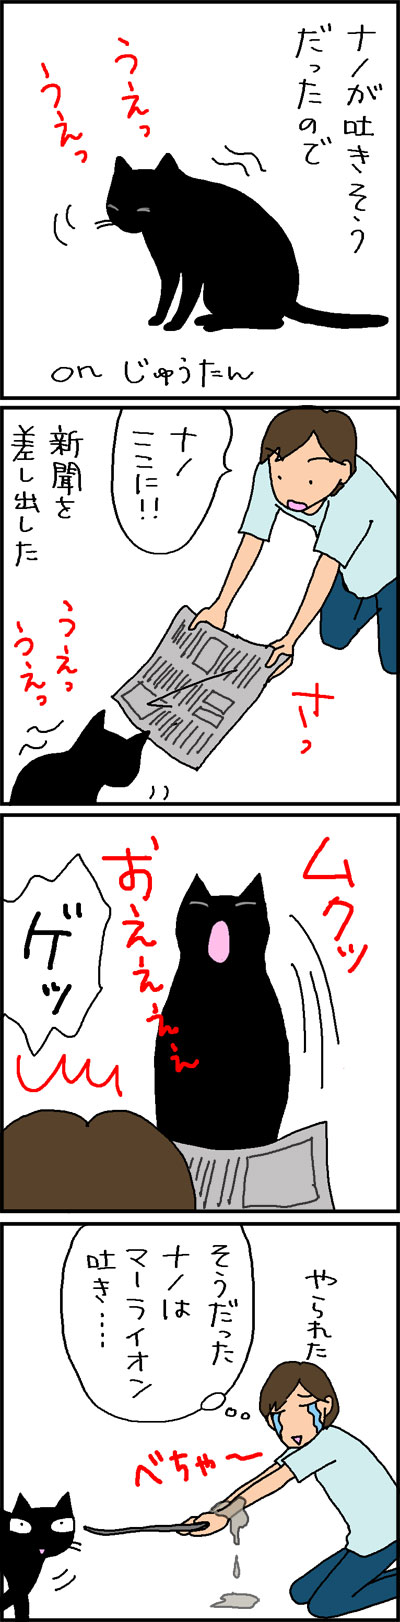 吐き飛ばすネコの4コマ猫漫画